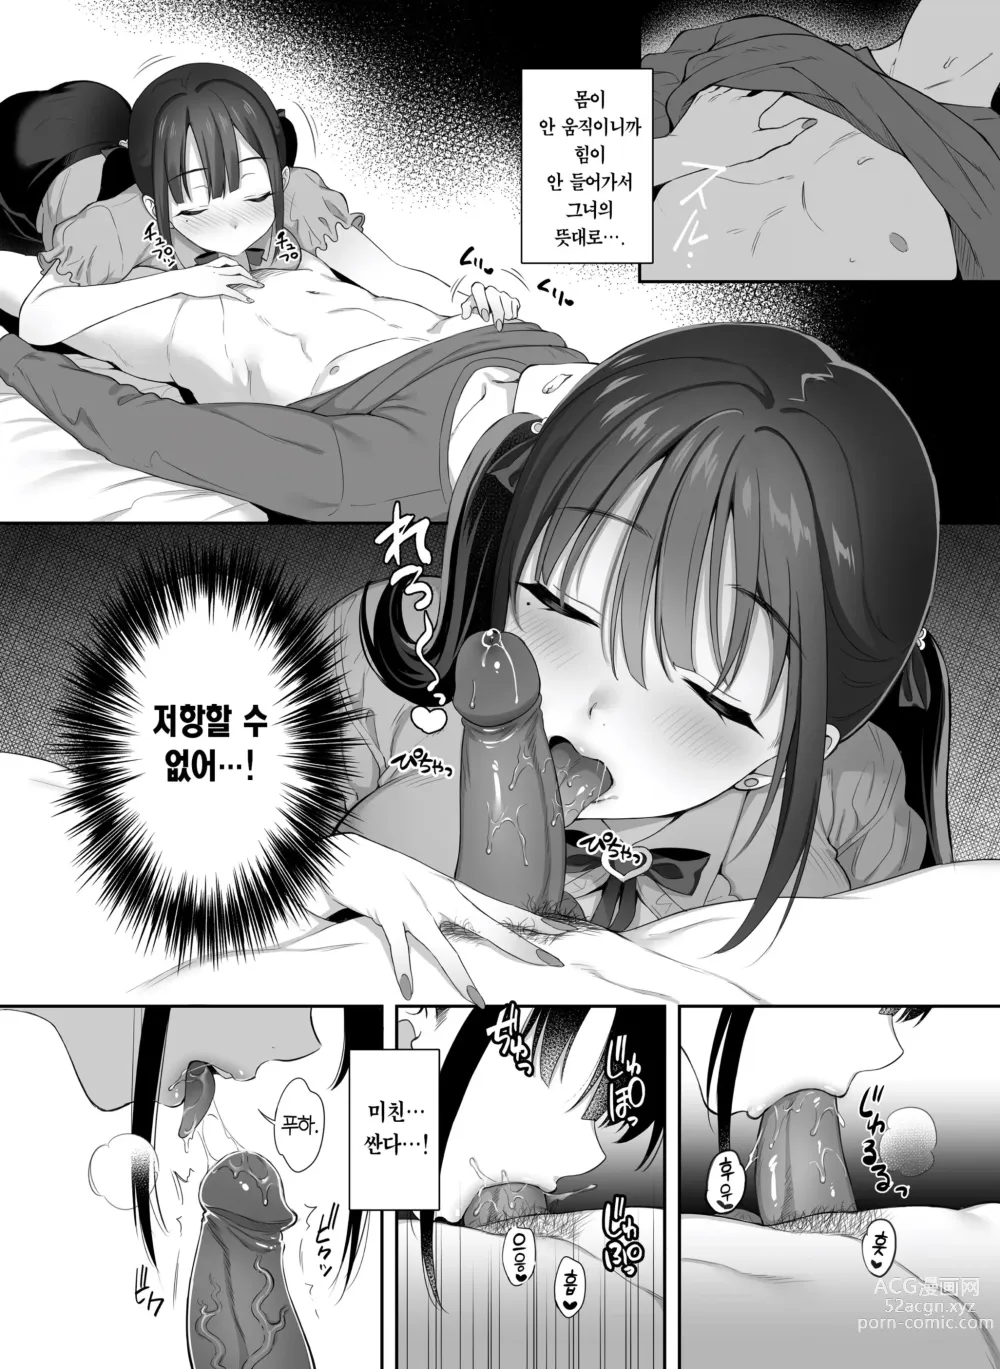 Page 13 of doujinshi 폐허에서 지뢰녀랑 밤새 질내사정 섹스한 이야기 2 (decensored)